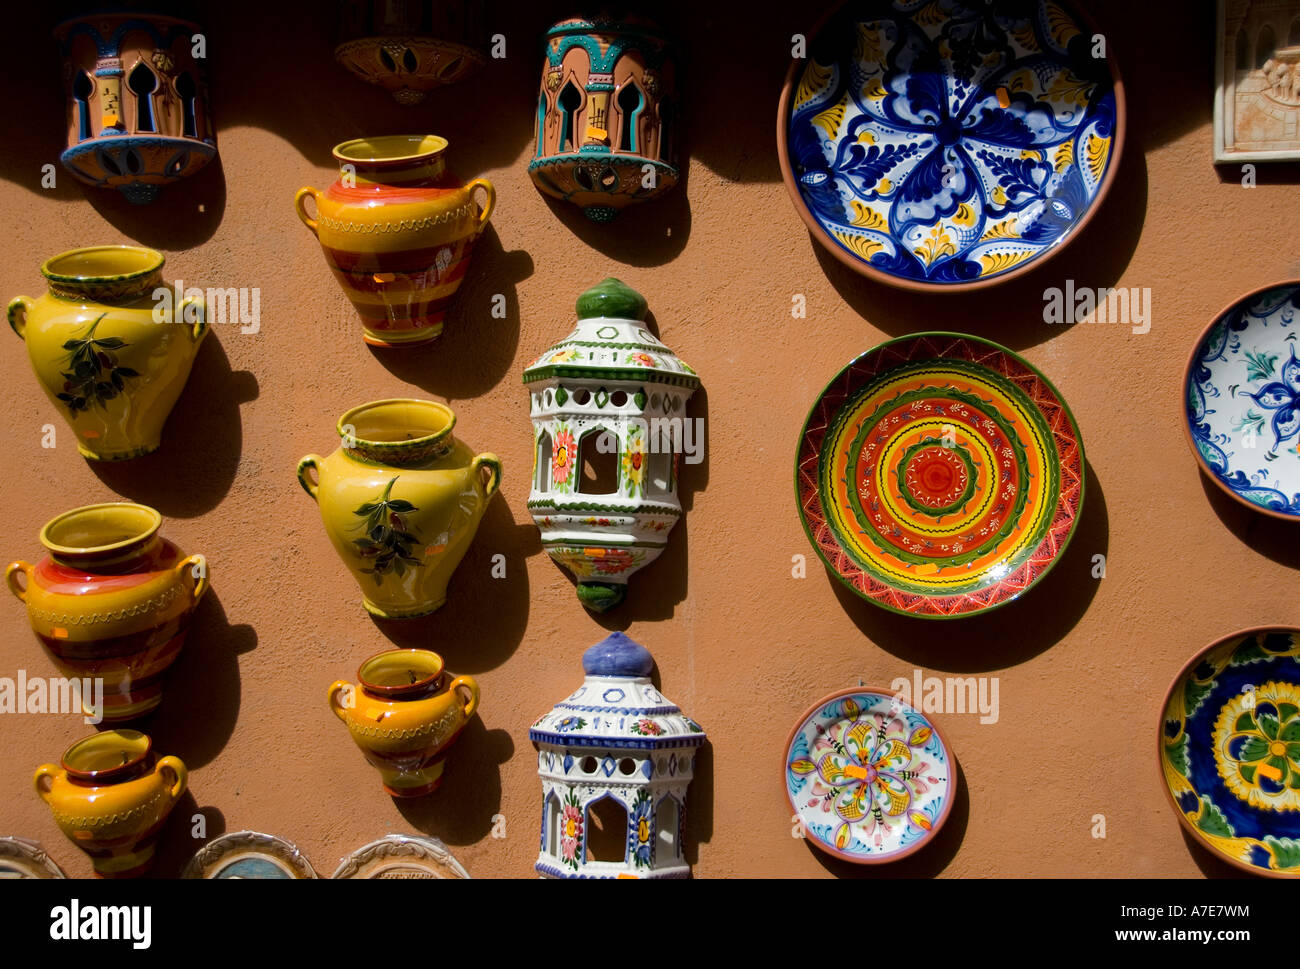 Affichage de la céramique espagnole dans un magasin à Grenade Espagne Banque D'Images